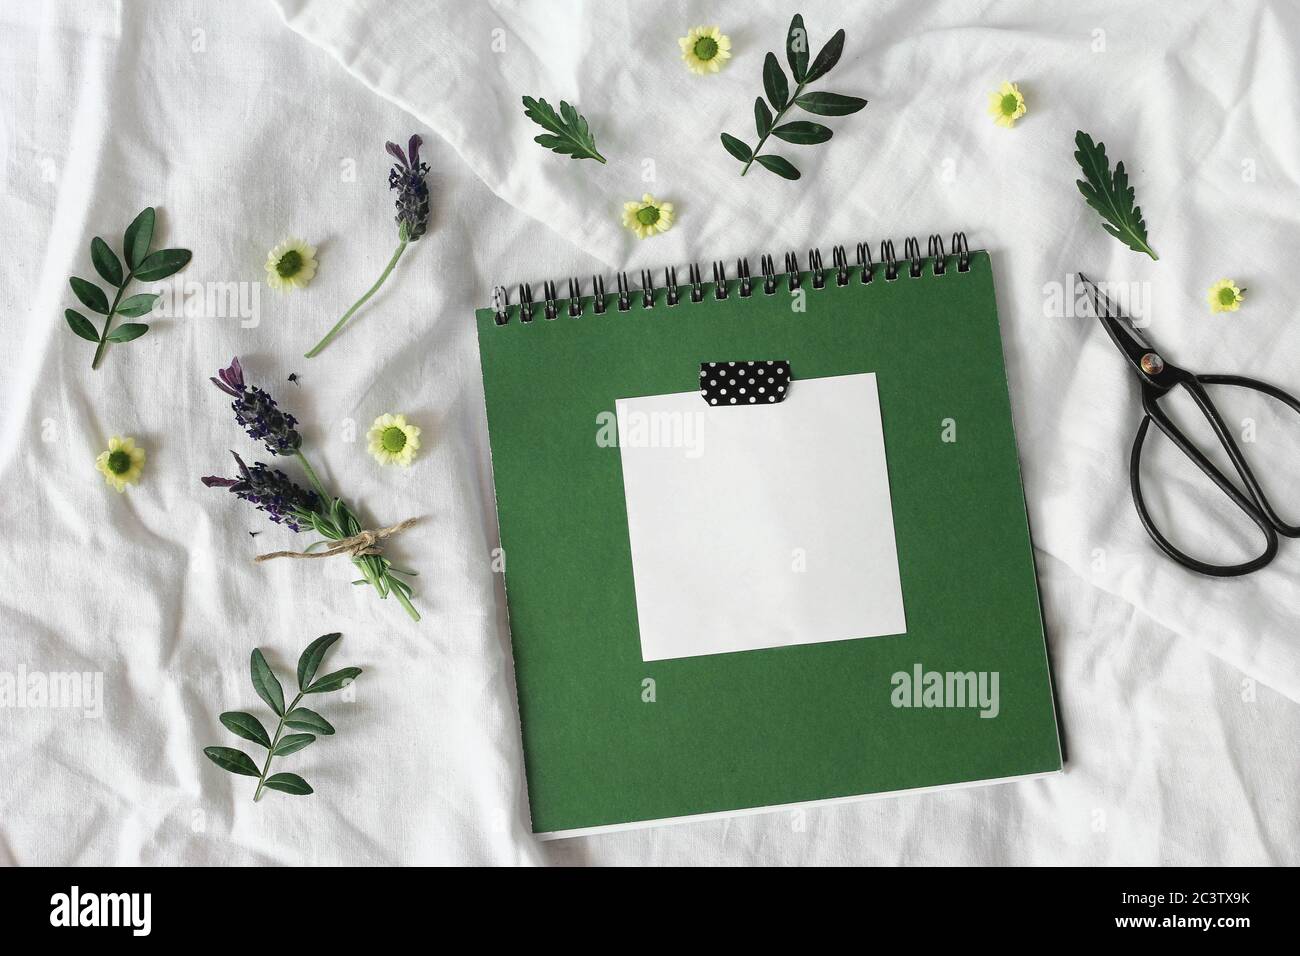 Sommer Lifestyle florale Komposition. Grünes Tagebuch, Skizzenbuch Mockup Szene mit leerem Notizblock. Lavendel und Chrysantheme Blumen und grüne Blätter auf Stockfoto